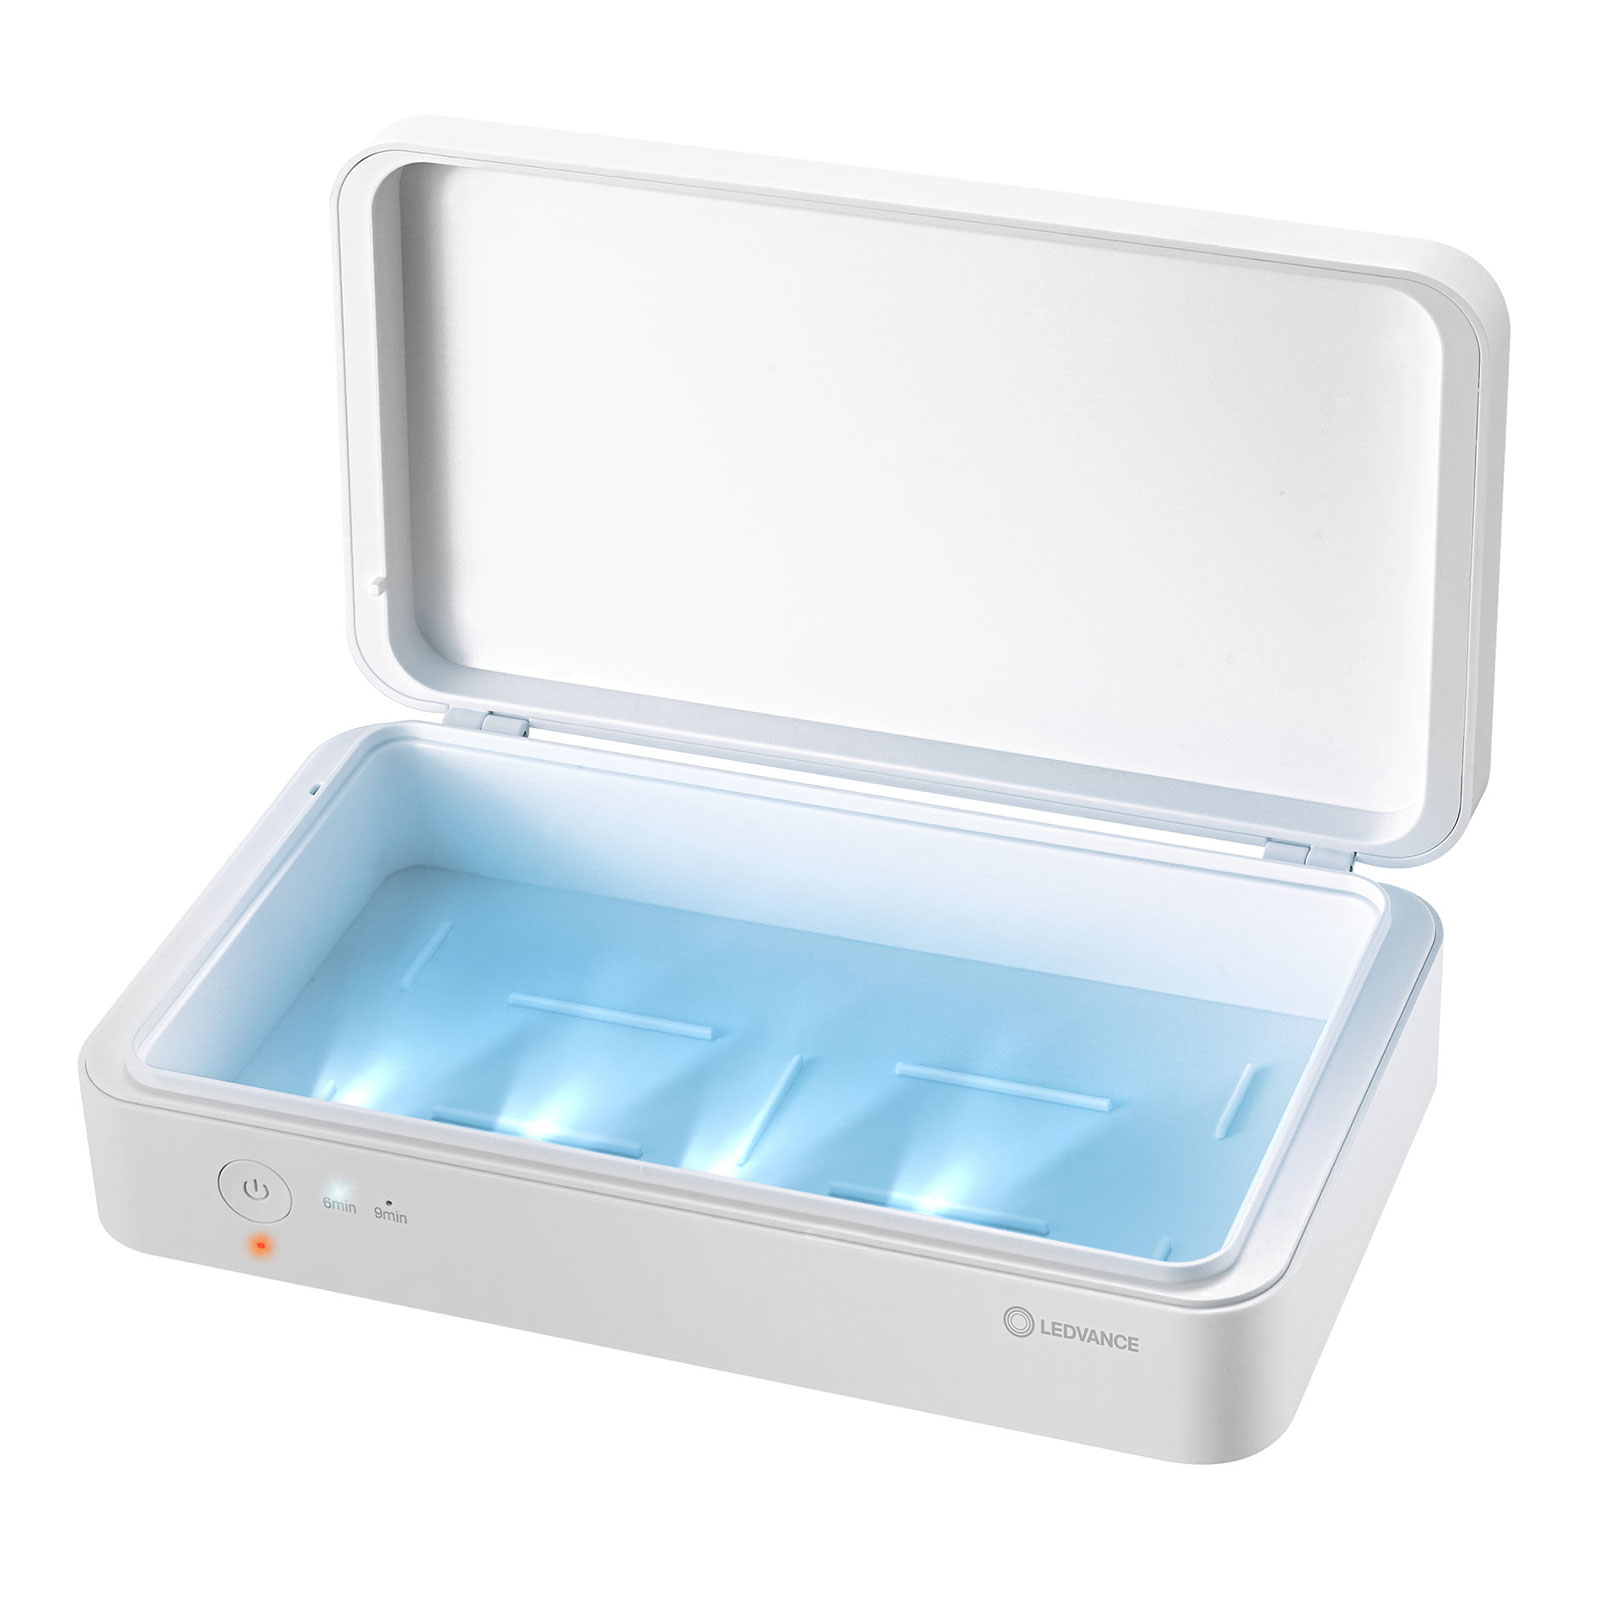 LEDVANCE caja de desinfección portátil UV-C